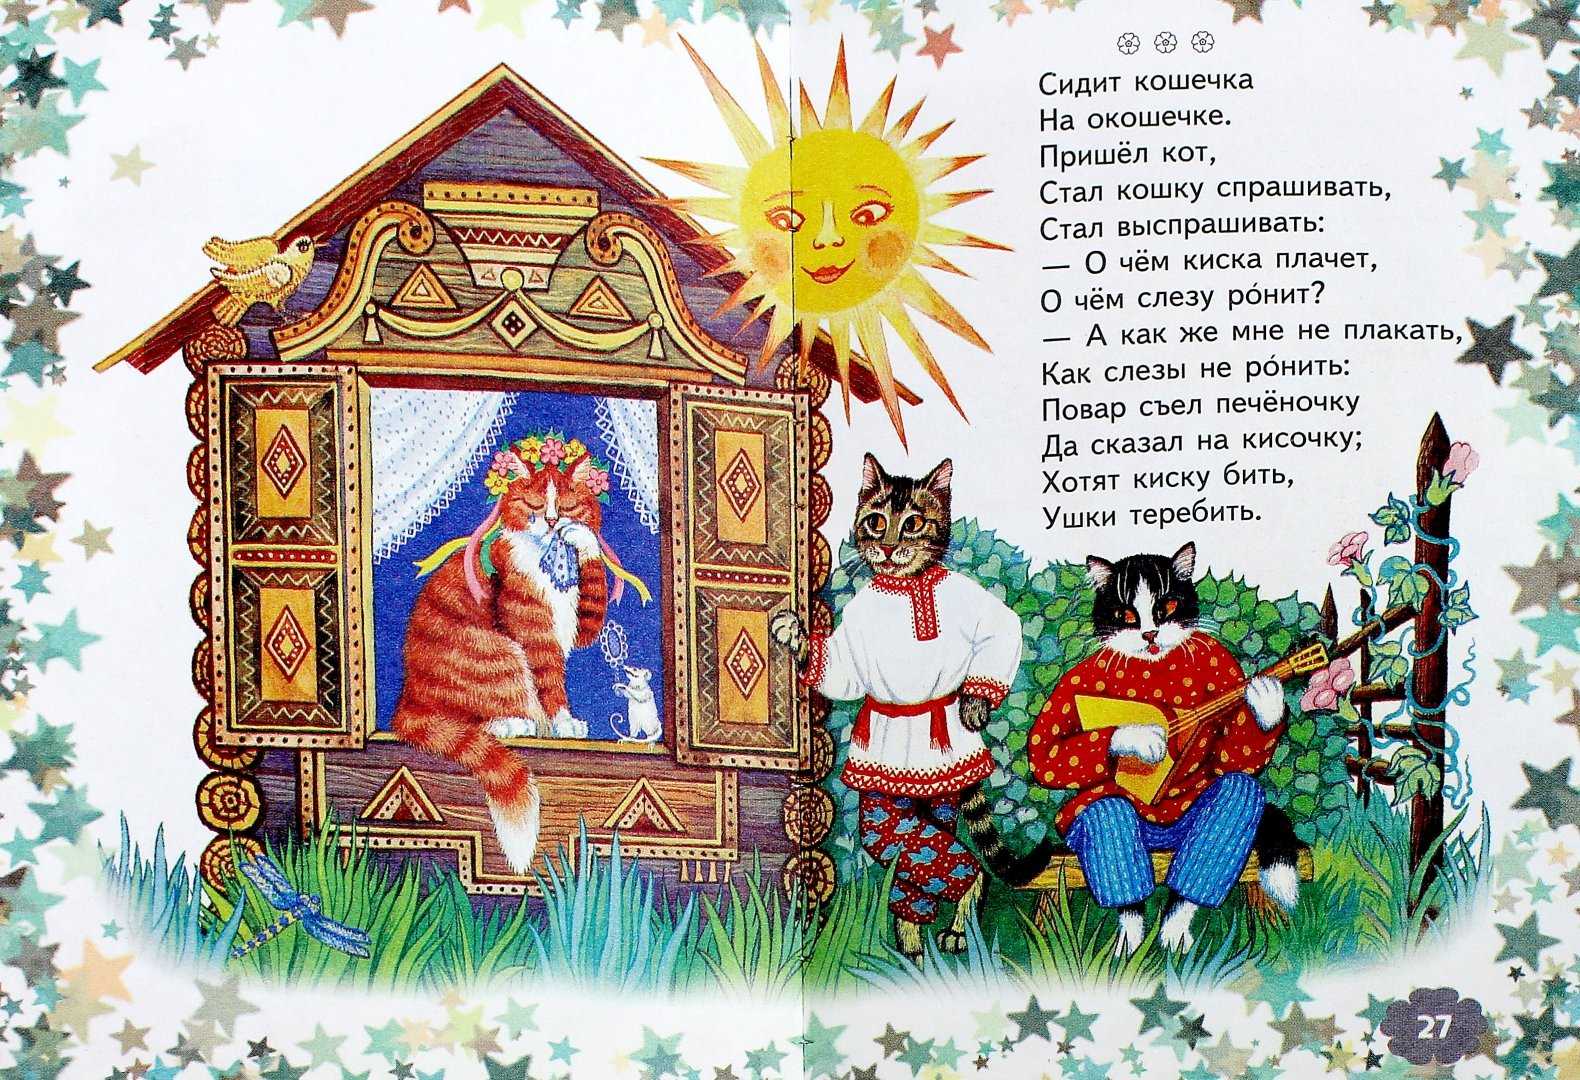 Фольклорная прибаутка. Русские народные потешки. Потешки и прибаутки. Русский фольклор потешки для детей. Шутки фольклор для детей.